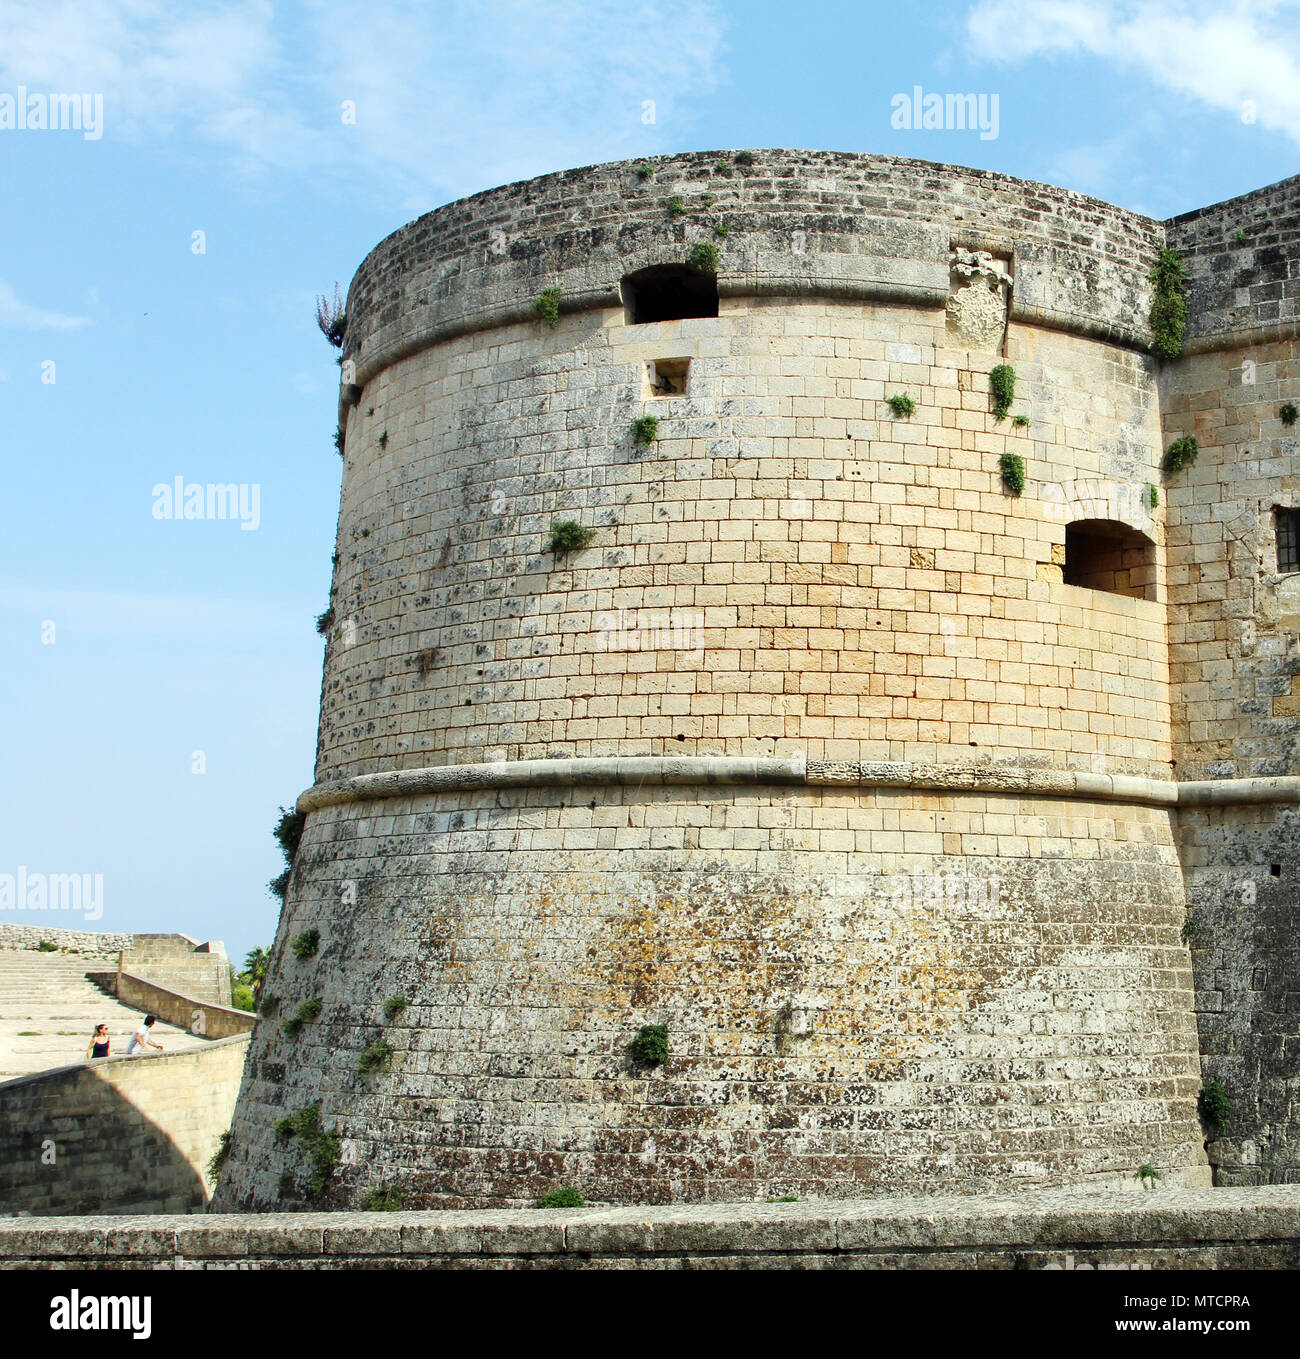 El Castillo de Otranto - Corigliano d'Otranto, Puglia, Italia. Una fachada barroca construida en el siglo XVII. Foto de stock